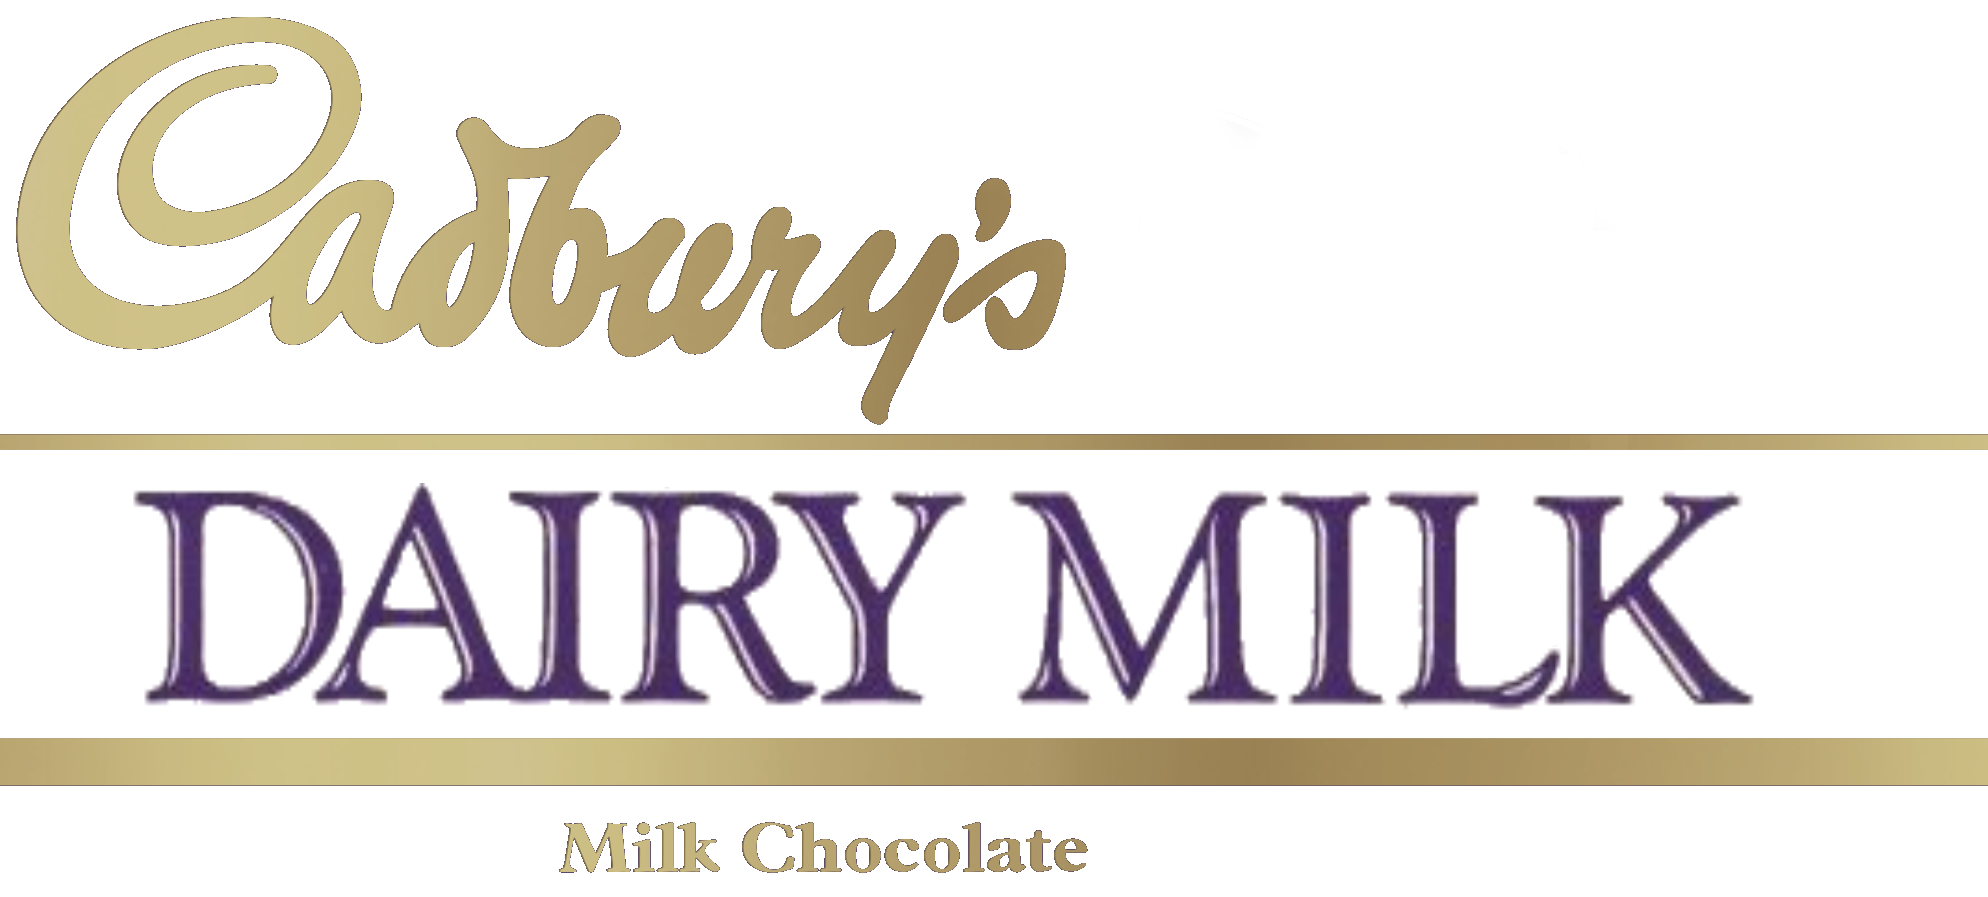 The New Cadbury Look